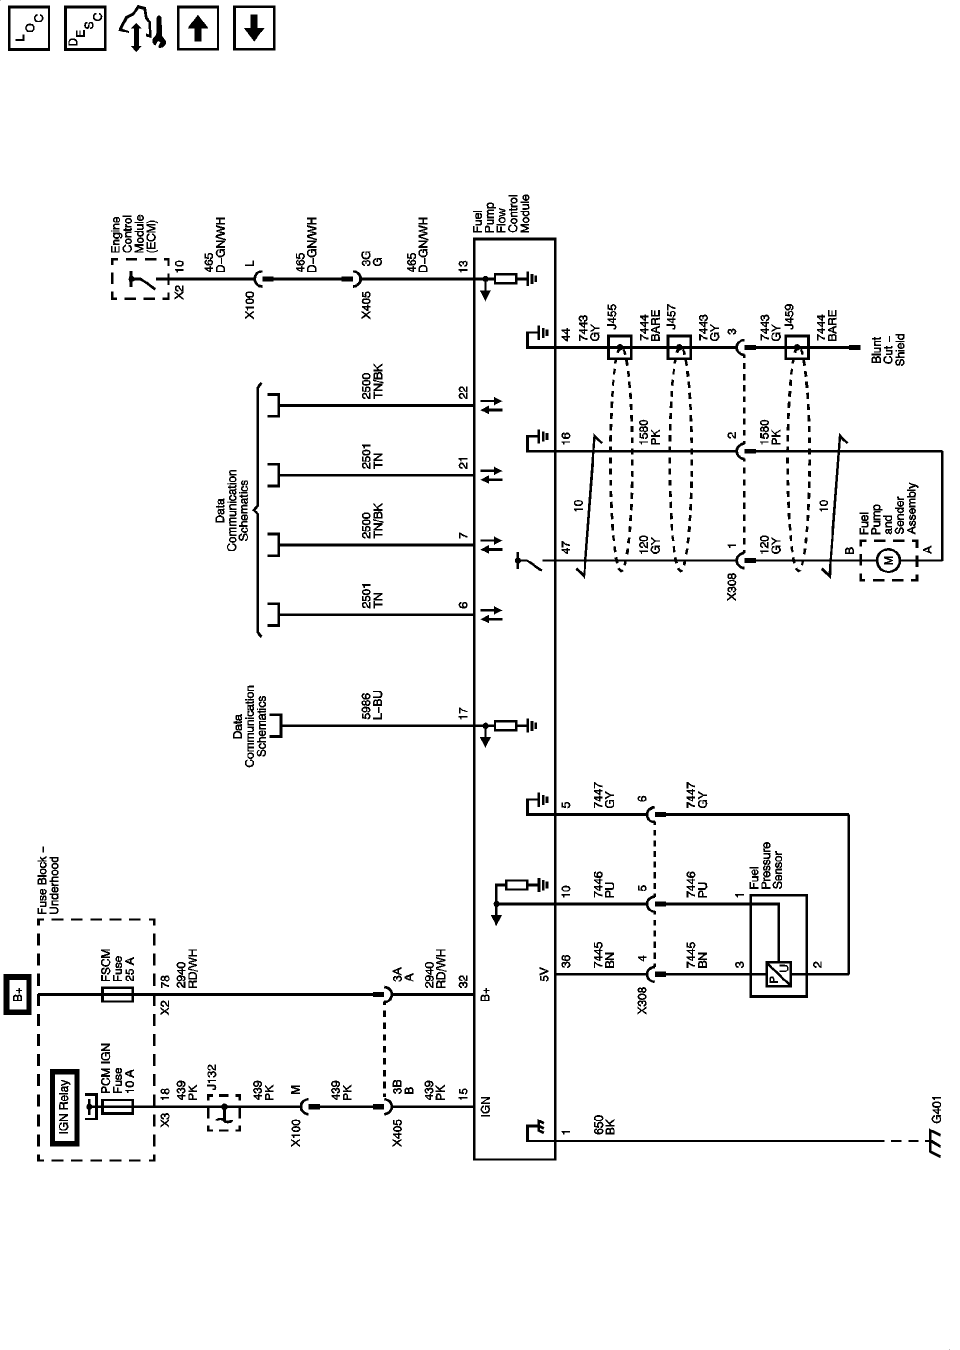 Mazda 323 Power Window Wiring Diagram from diagramweb.net